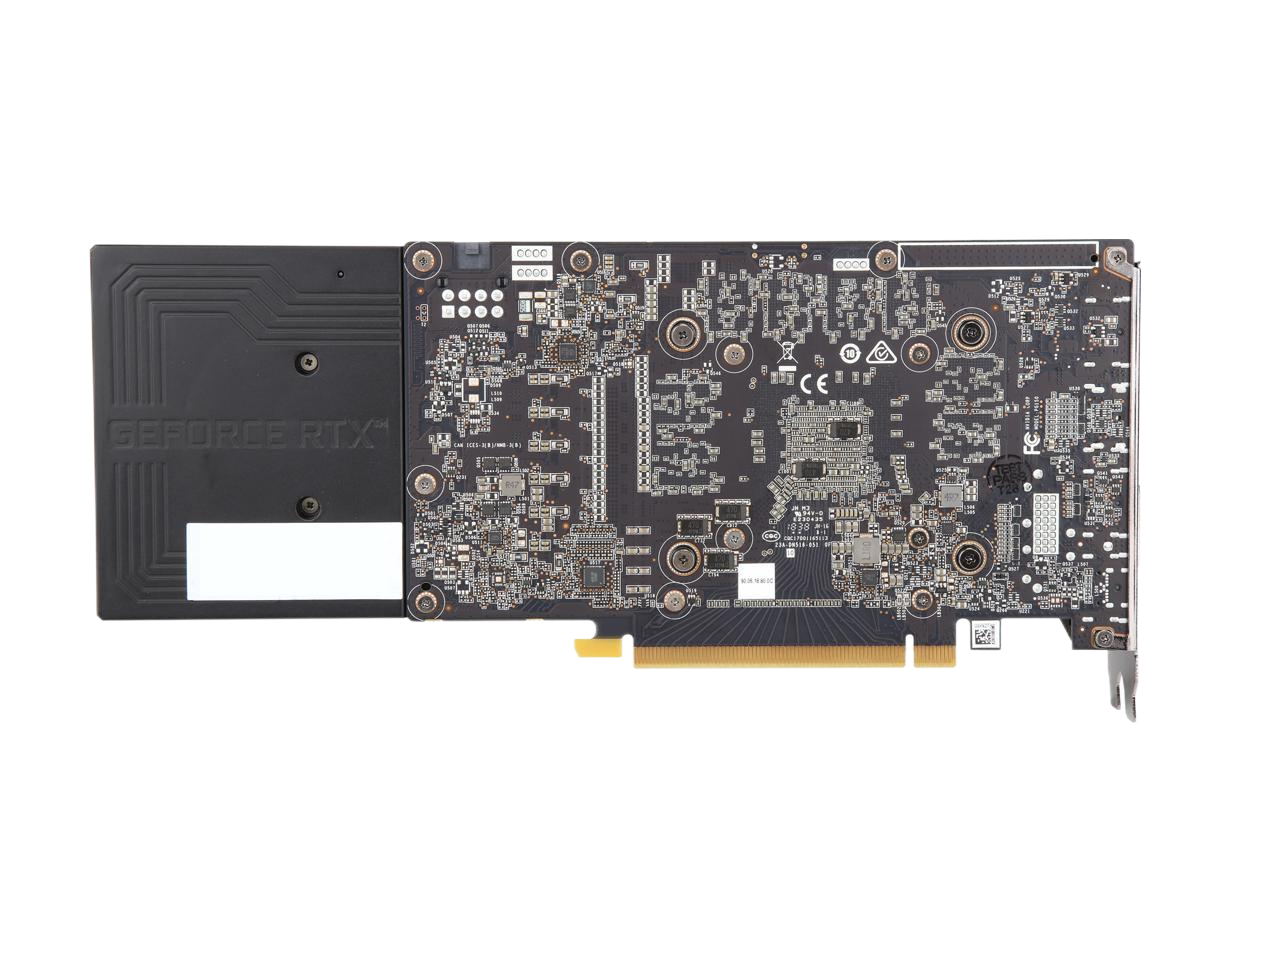 PNY GeForce RTX 2070 8GB GDDR6 PCI Express 3.0 Video Card VCG20708BLMPB